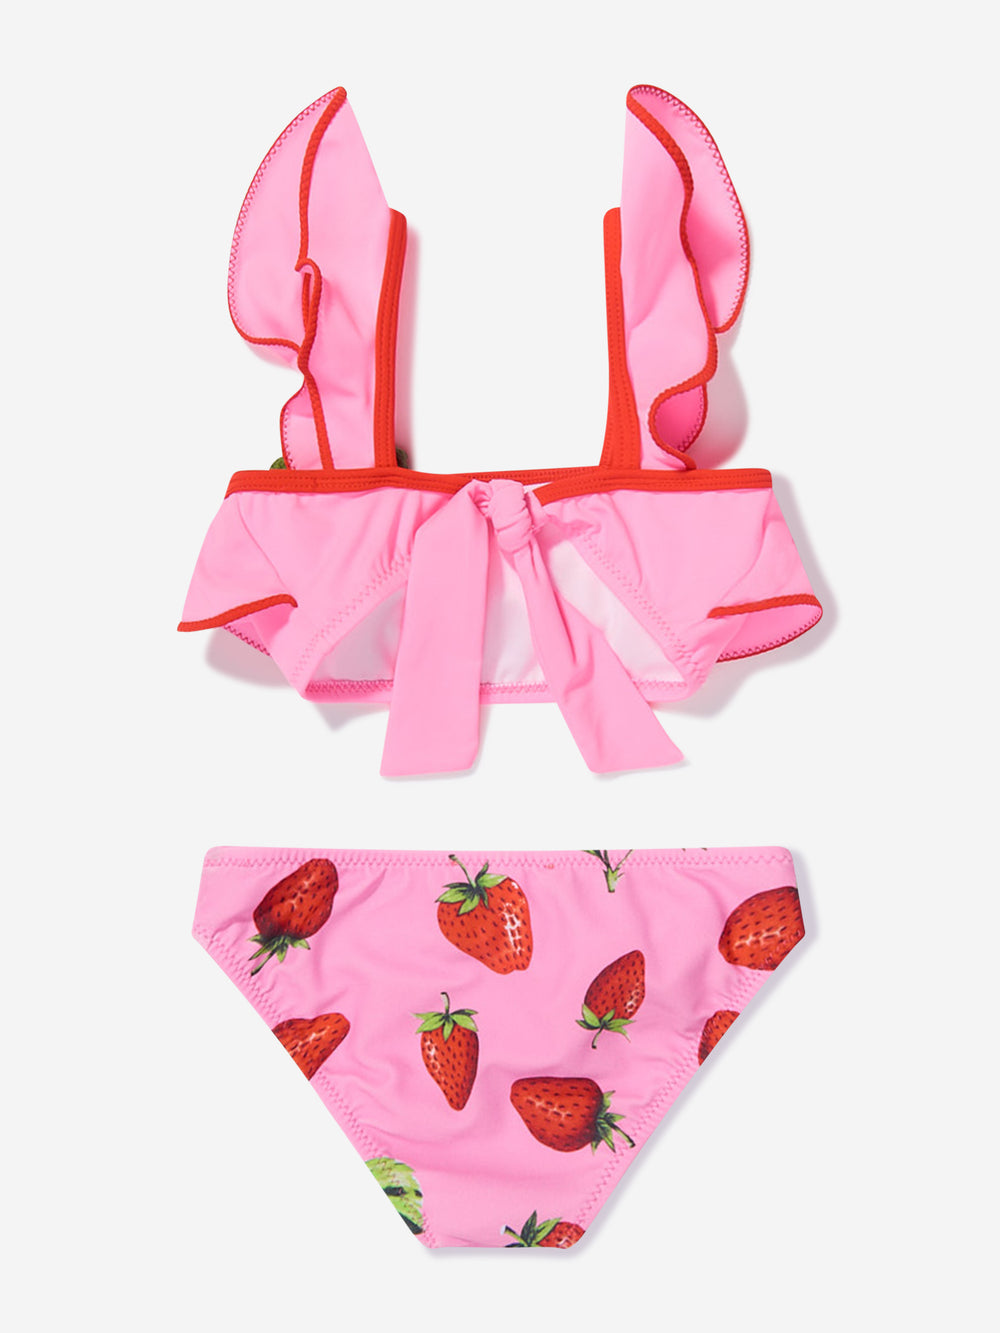 Girls Strawberry Ruffle Arina Bikini in Pink | Childsplay Clothing